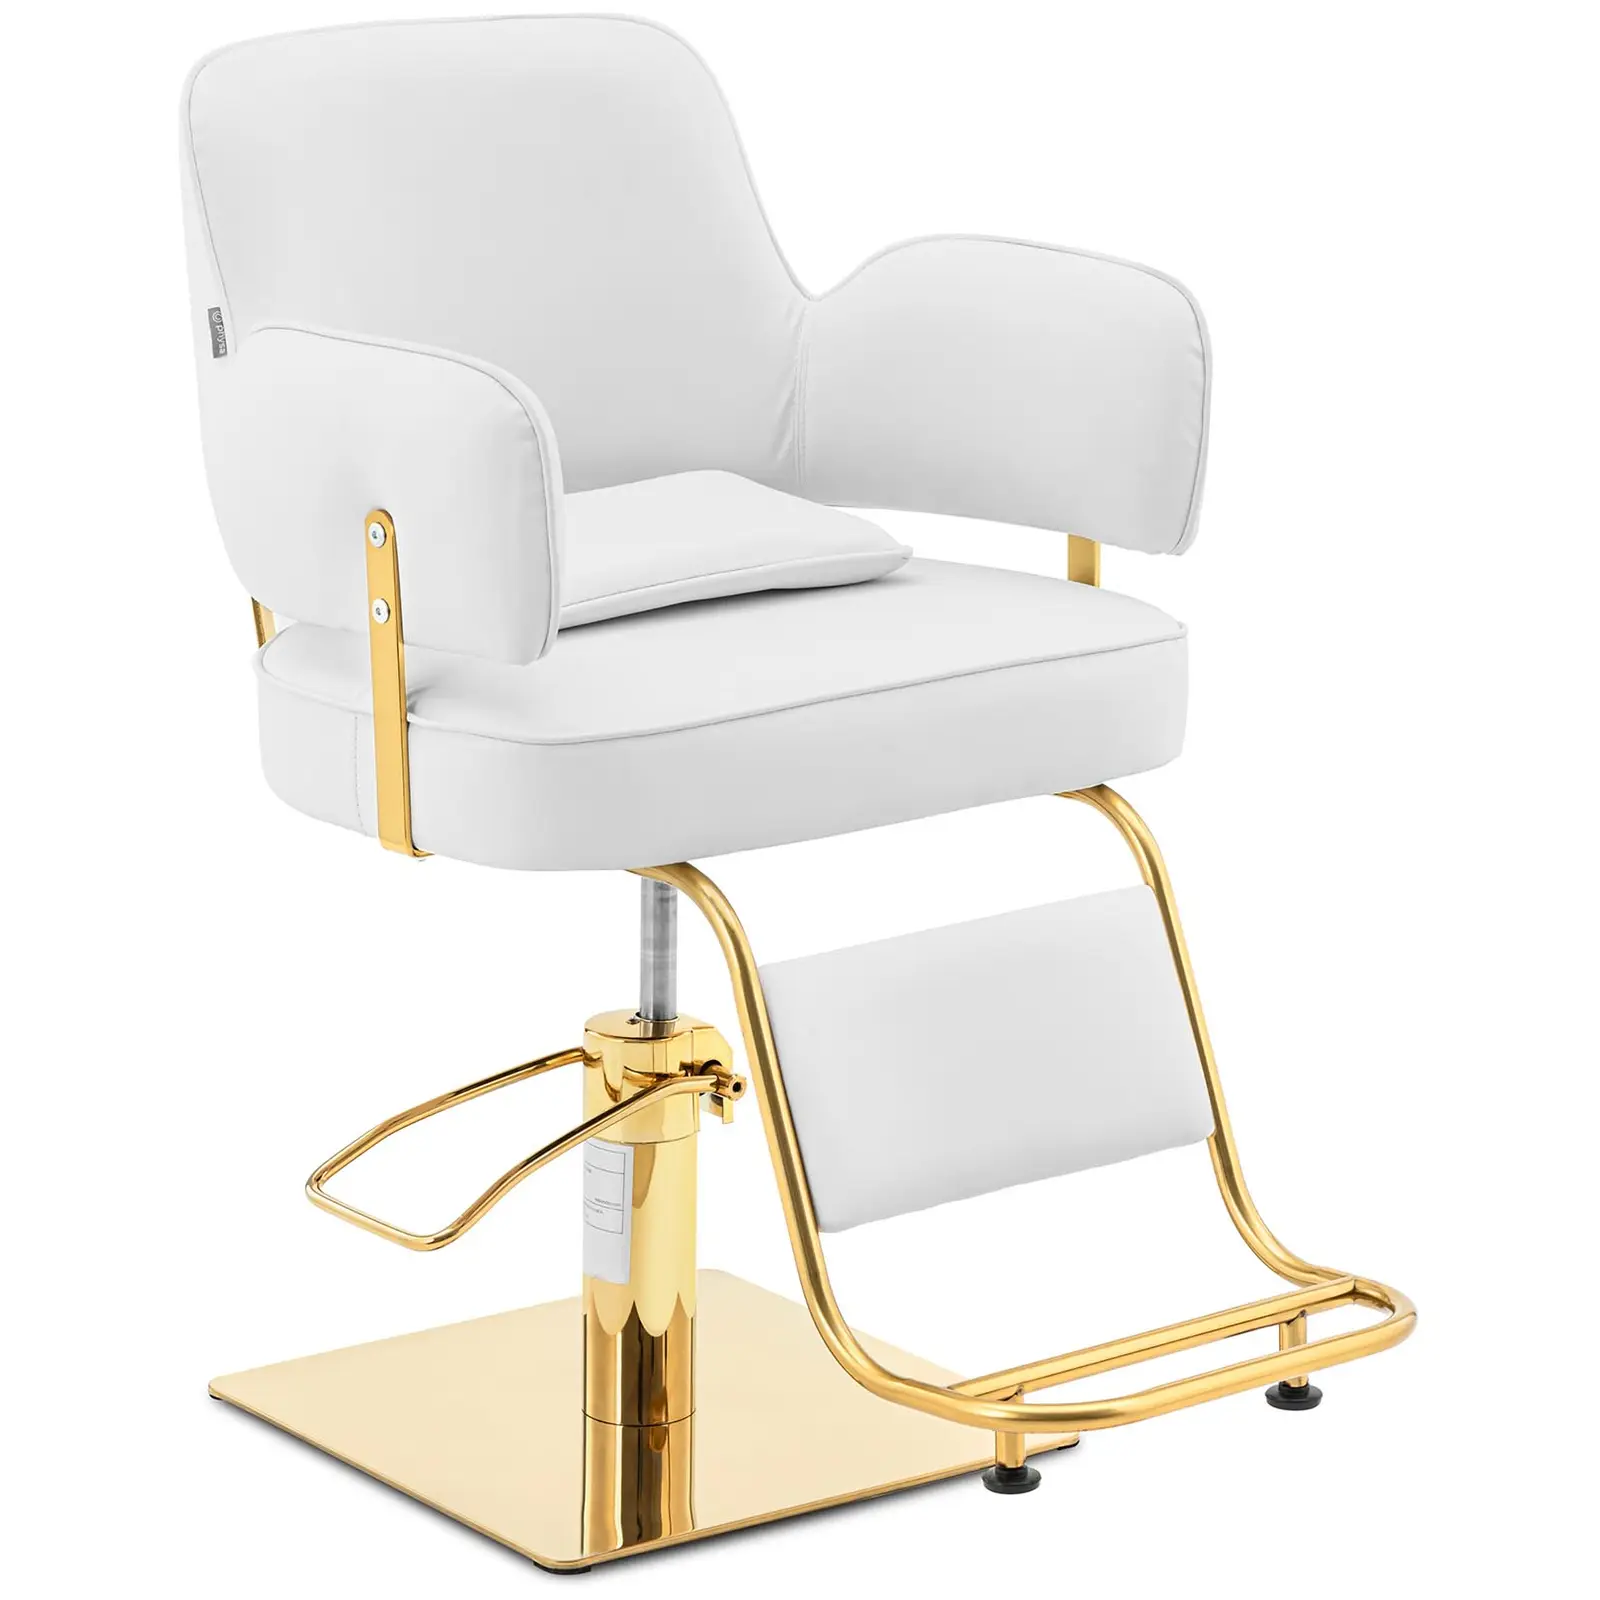 Fotel fryzjerski z podnóżkiem - 890-1020 mm - 200 kg - złoty, biały